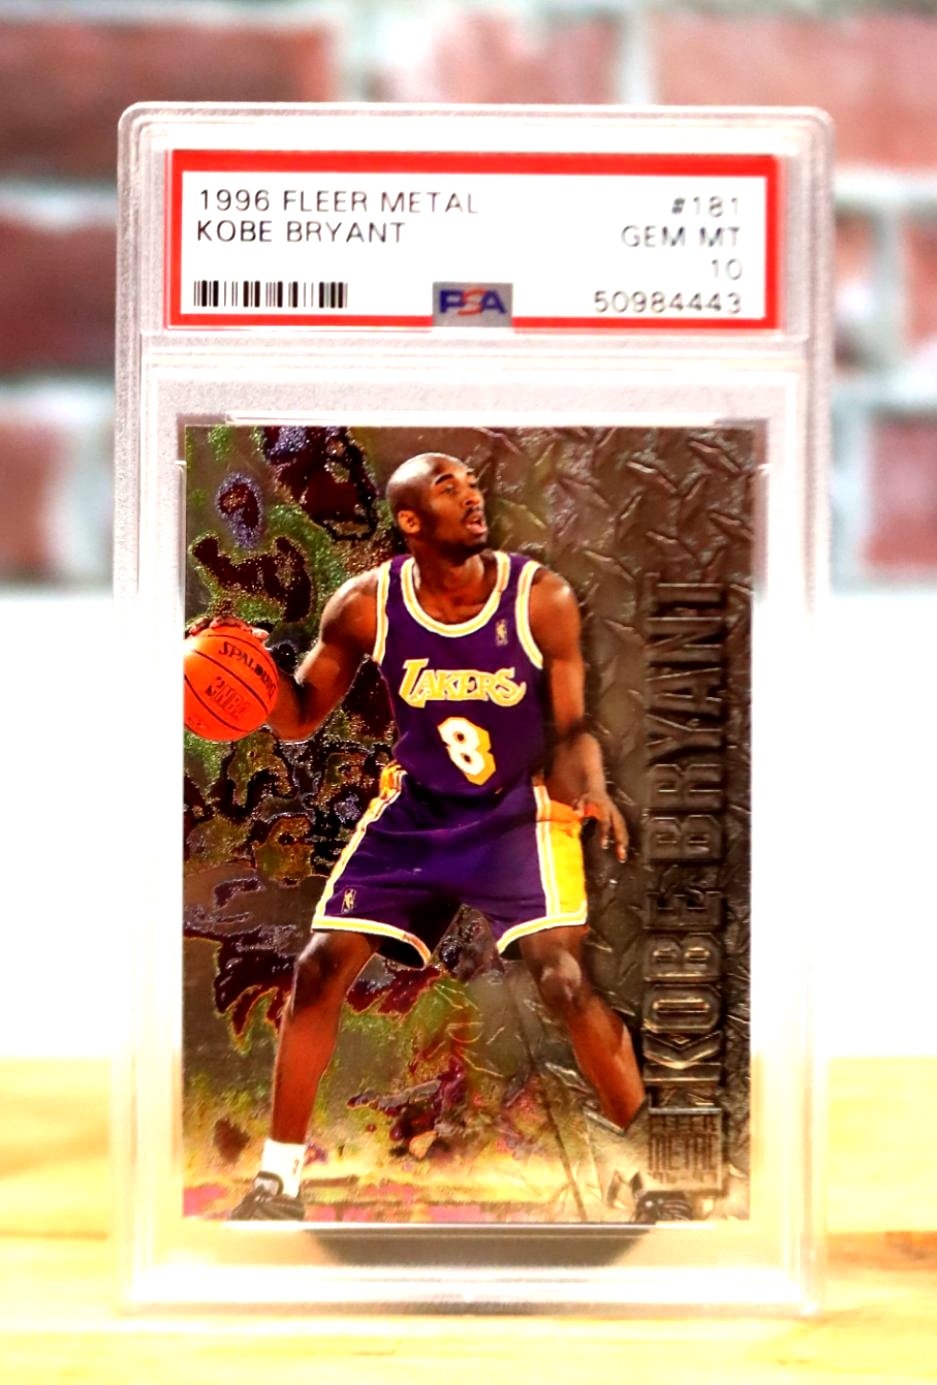 1996 Fleer Metal Kobe Bryant Rookie Card PSA 10